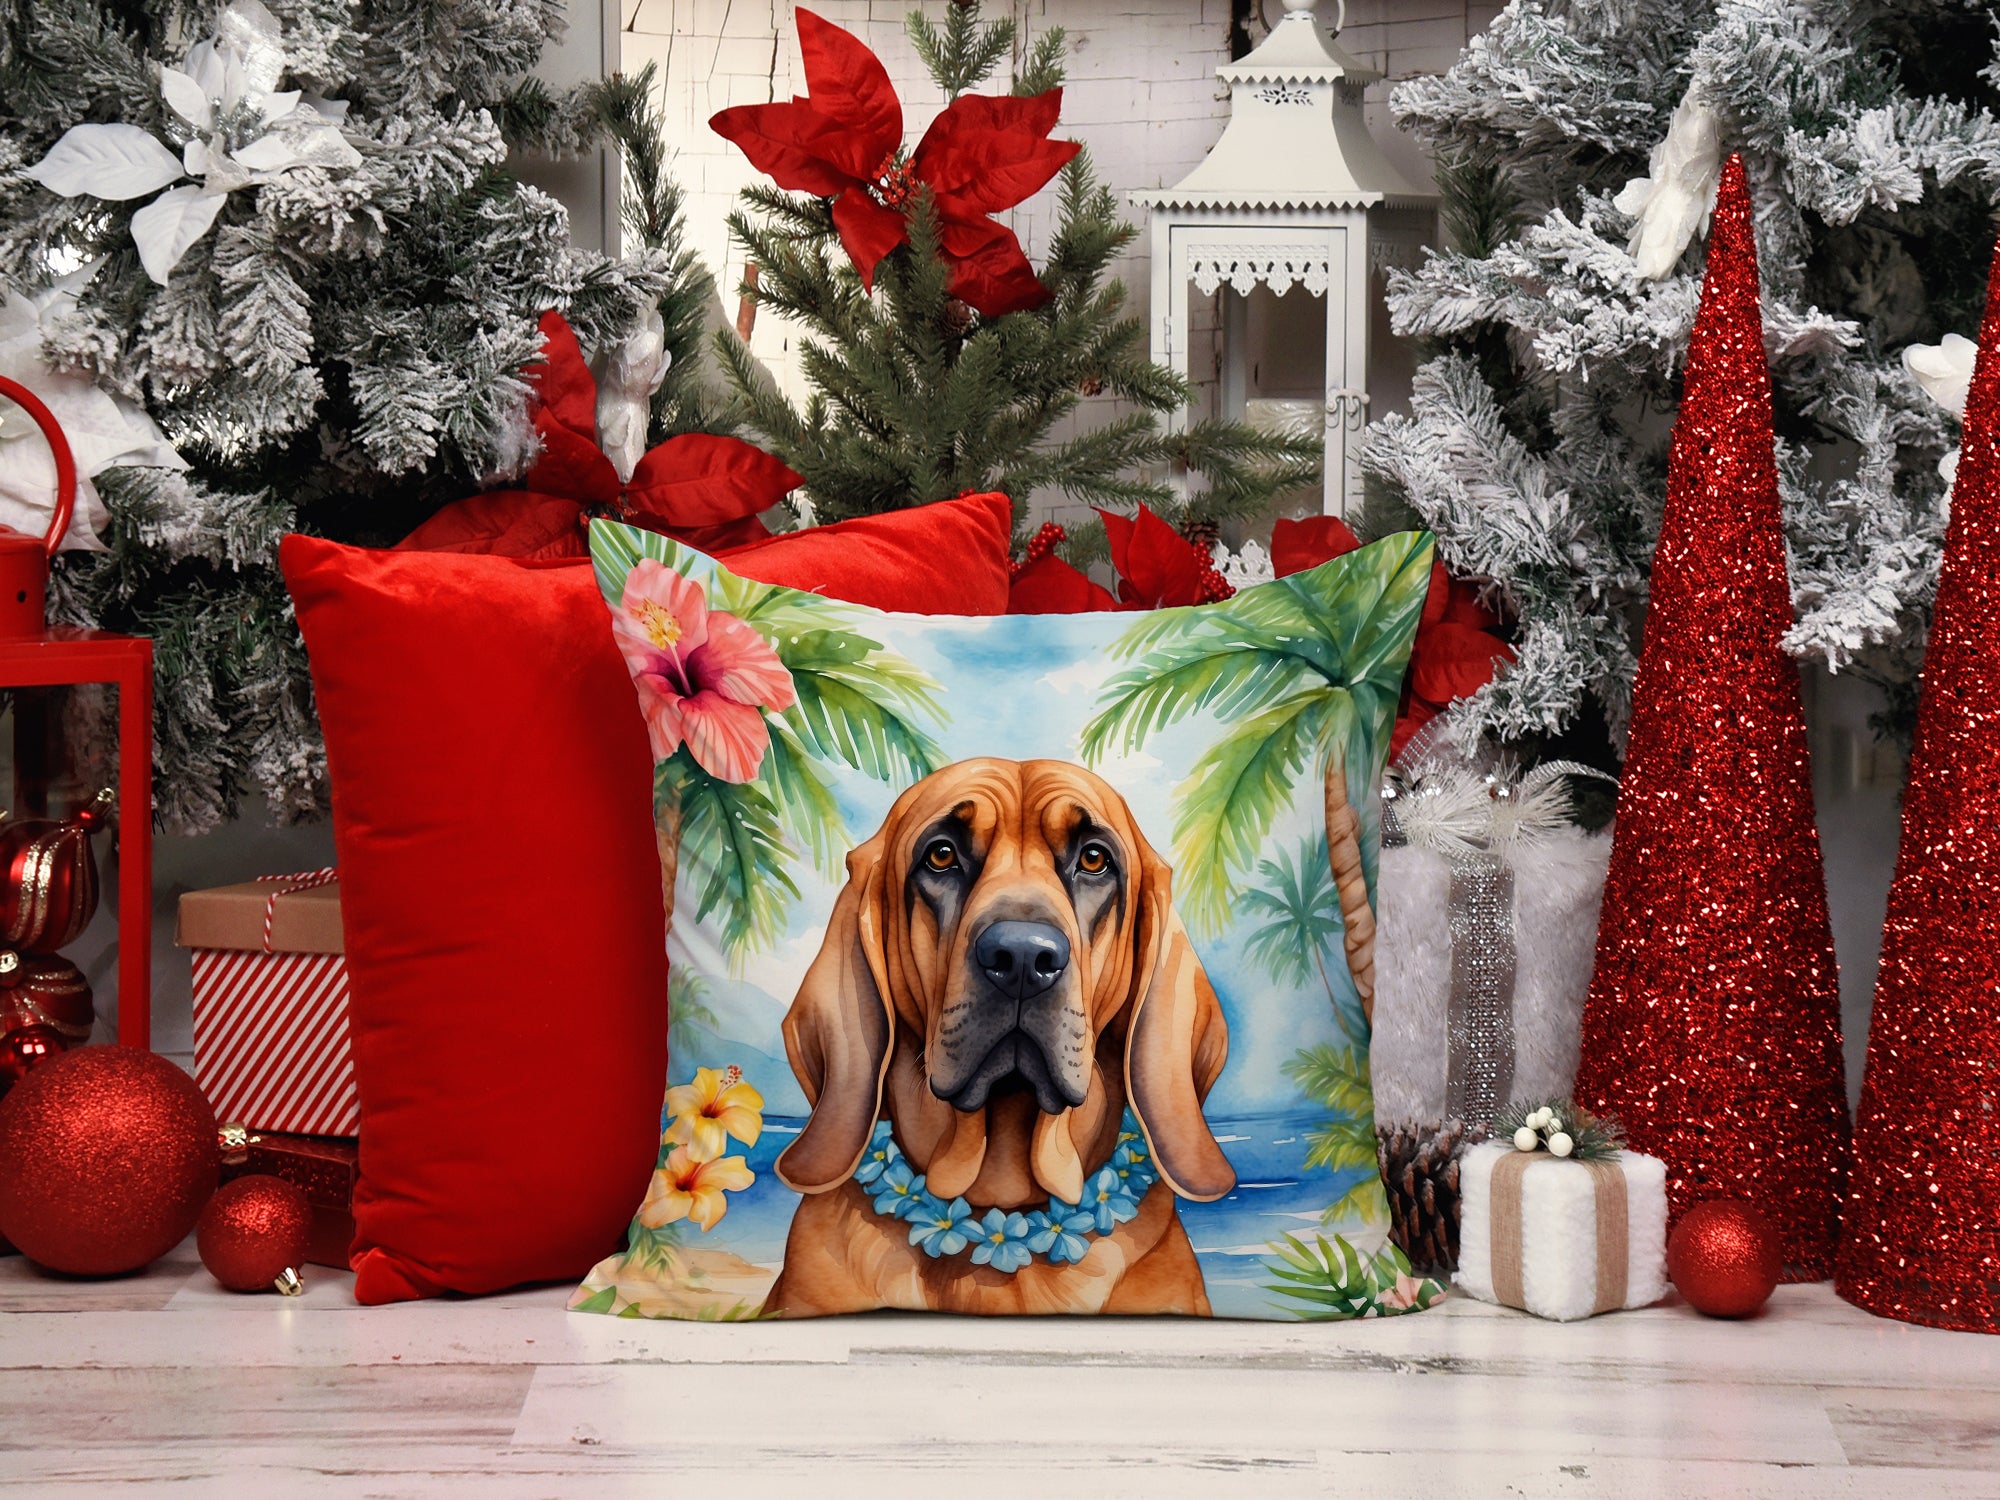 Bloodhound Luau Throw Pillow